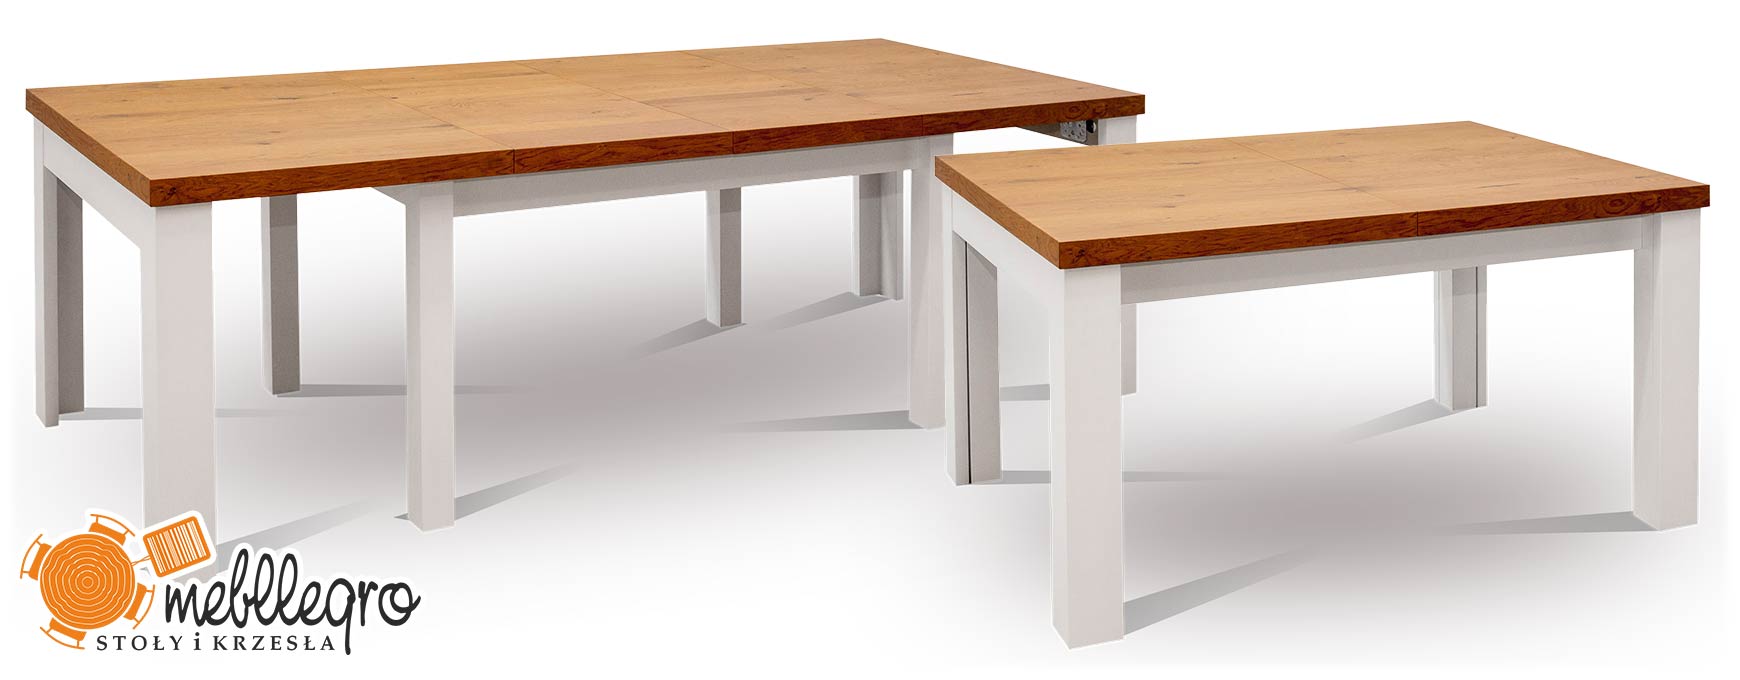 Stół S25 rozkładany drewniany 8 nóg